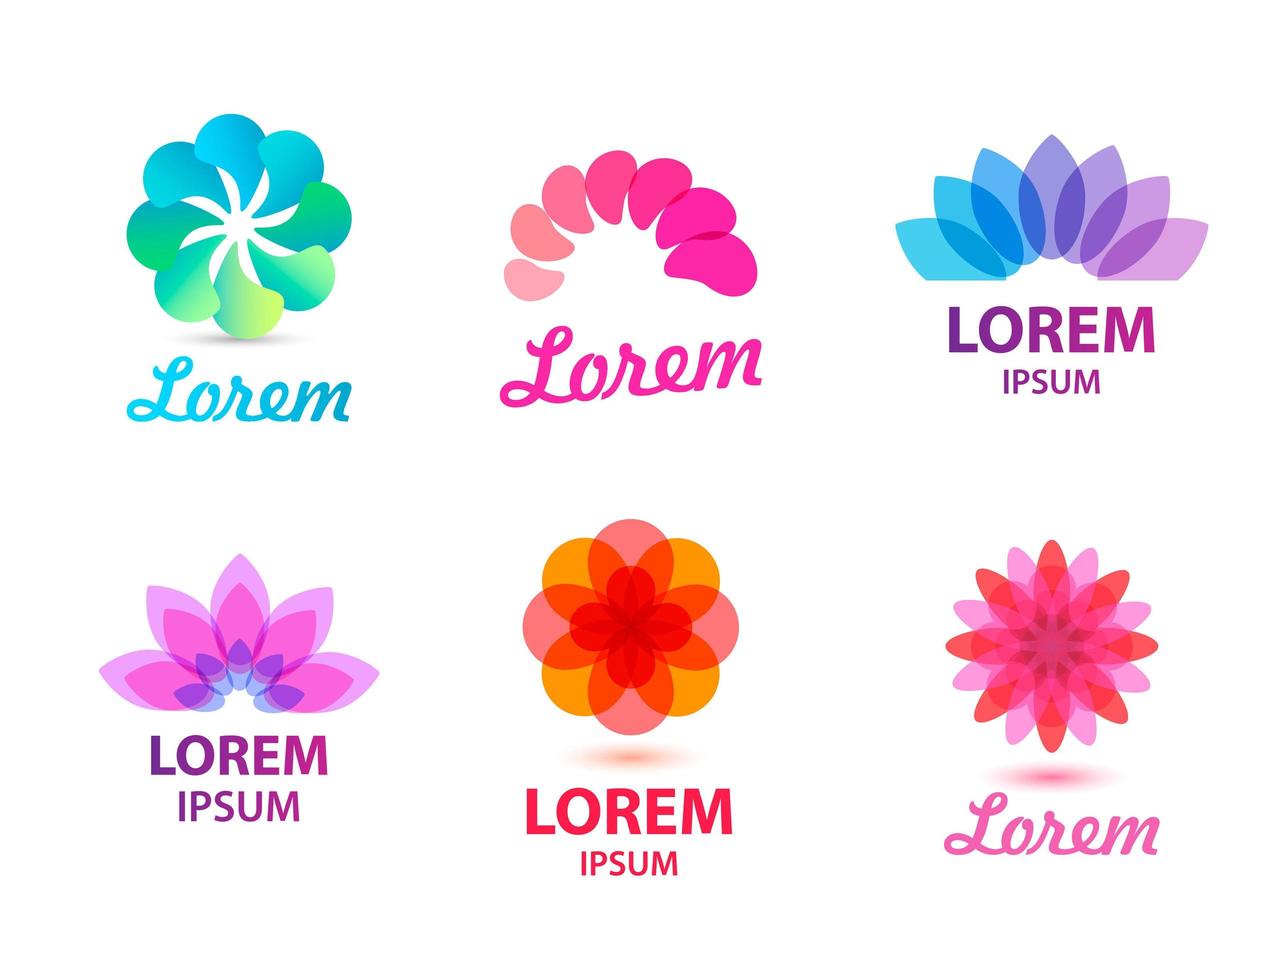 Vektor-Set von abstrakten Blumen-, Blatt-Logos. vektor